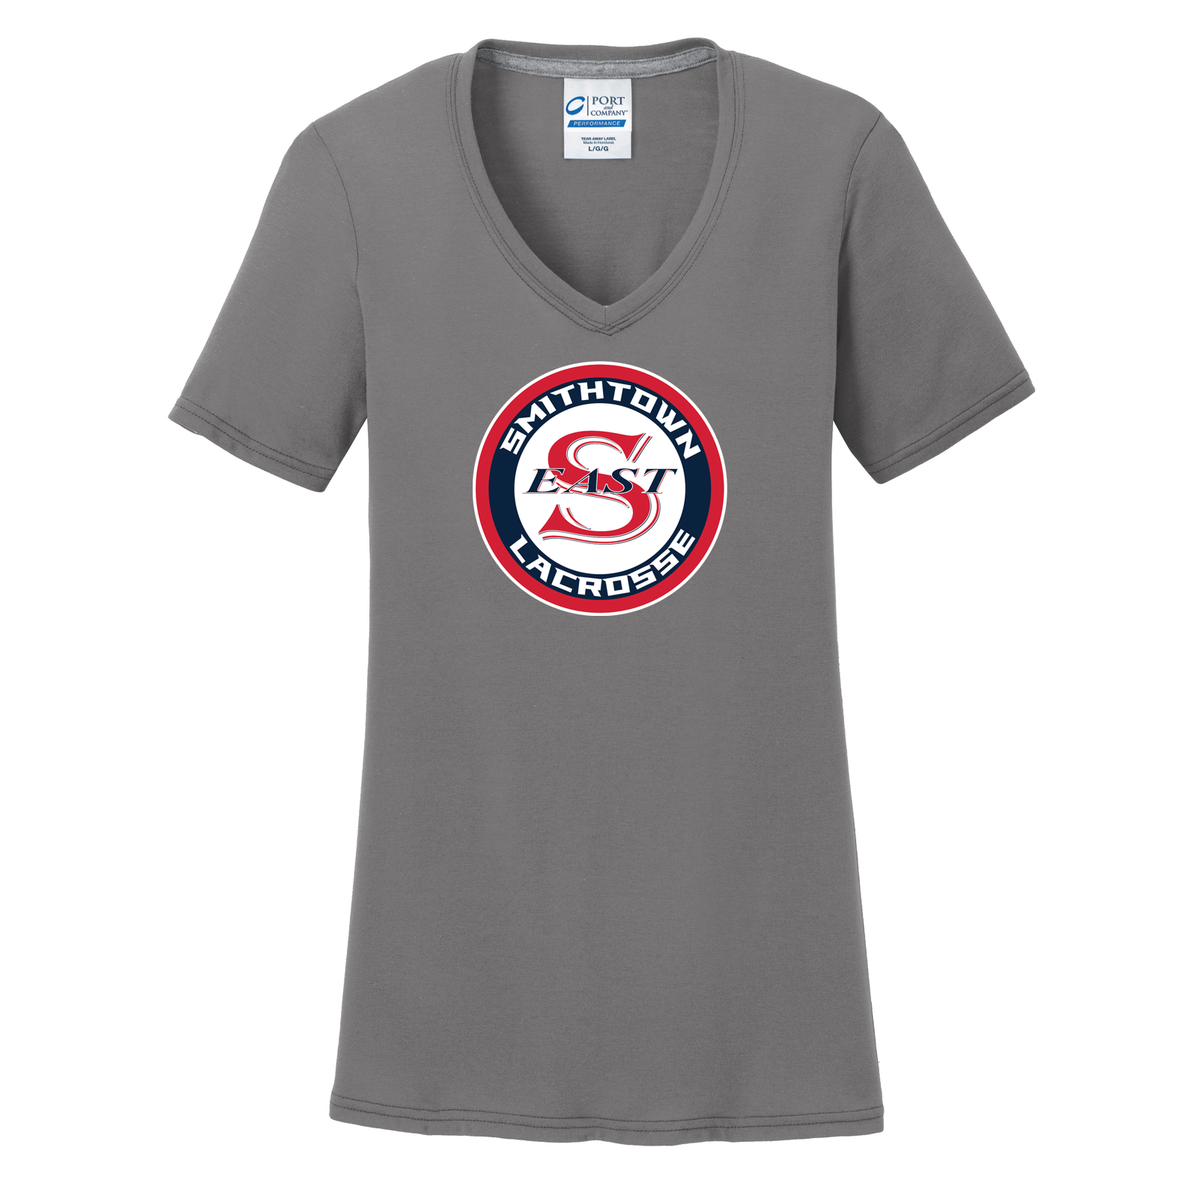 Smithtown East Girls Lacrosse Women's T-Shirt